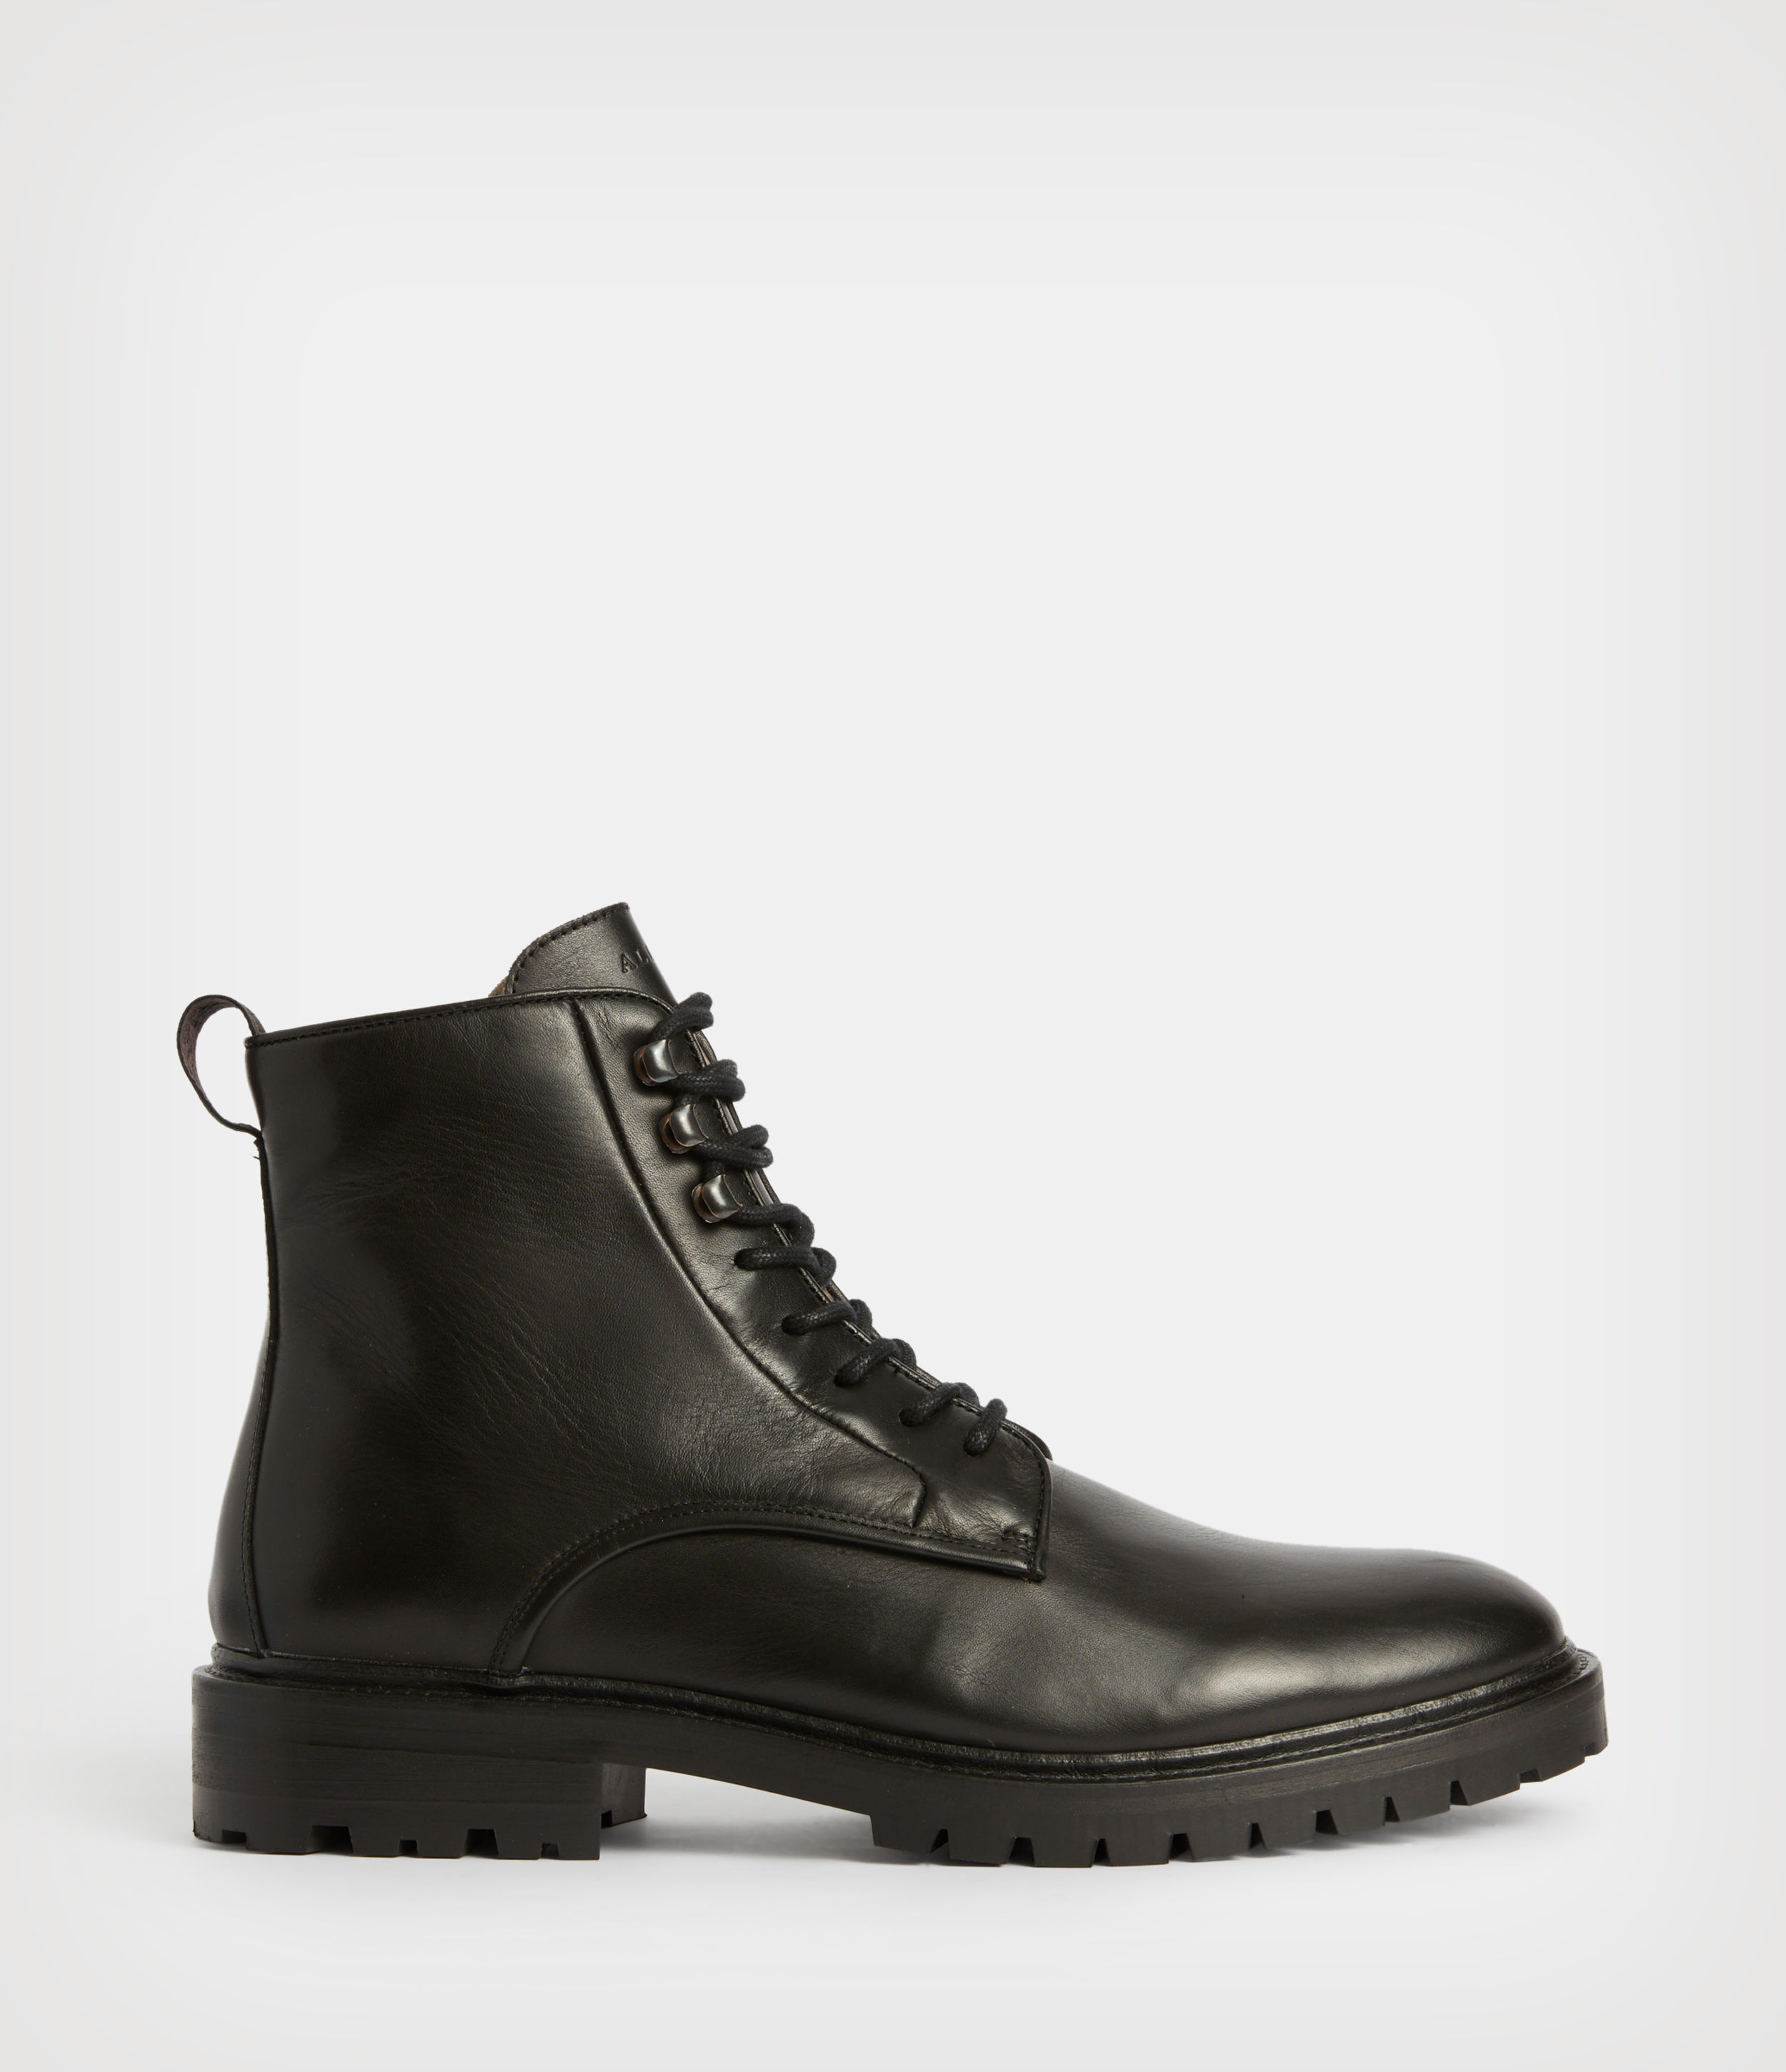 AllSaints Men's Laker Leather Boots, Black, Size: UK 11/US 12/EU 45